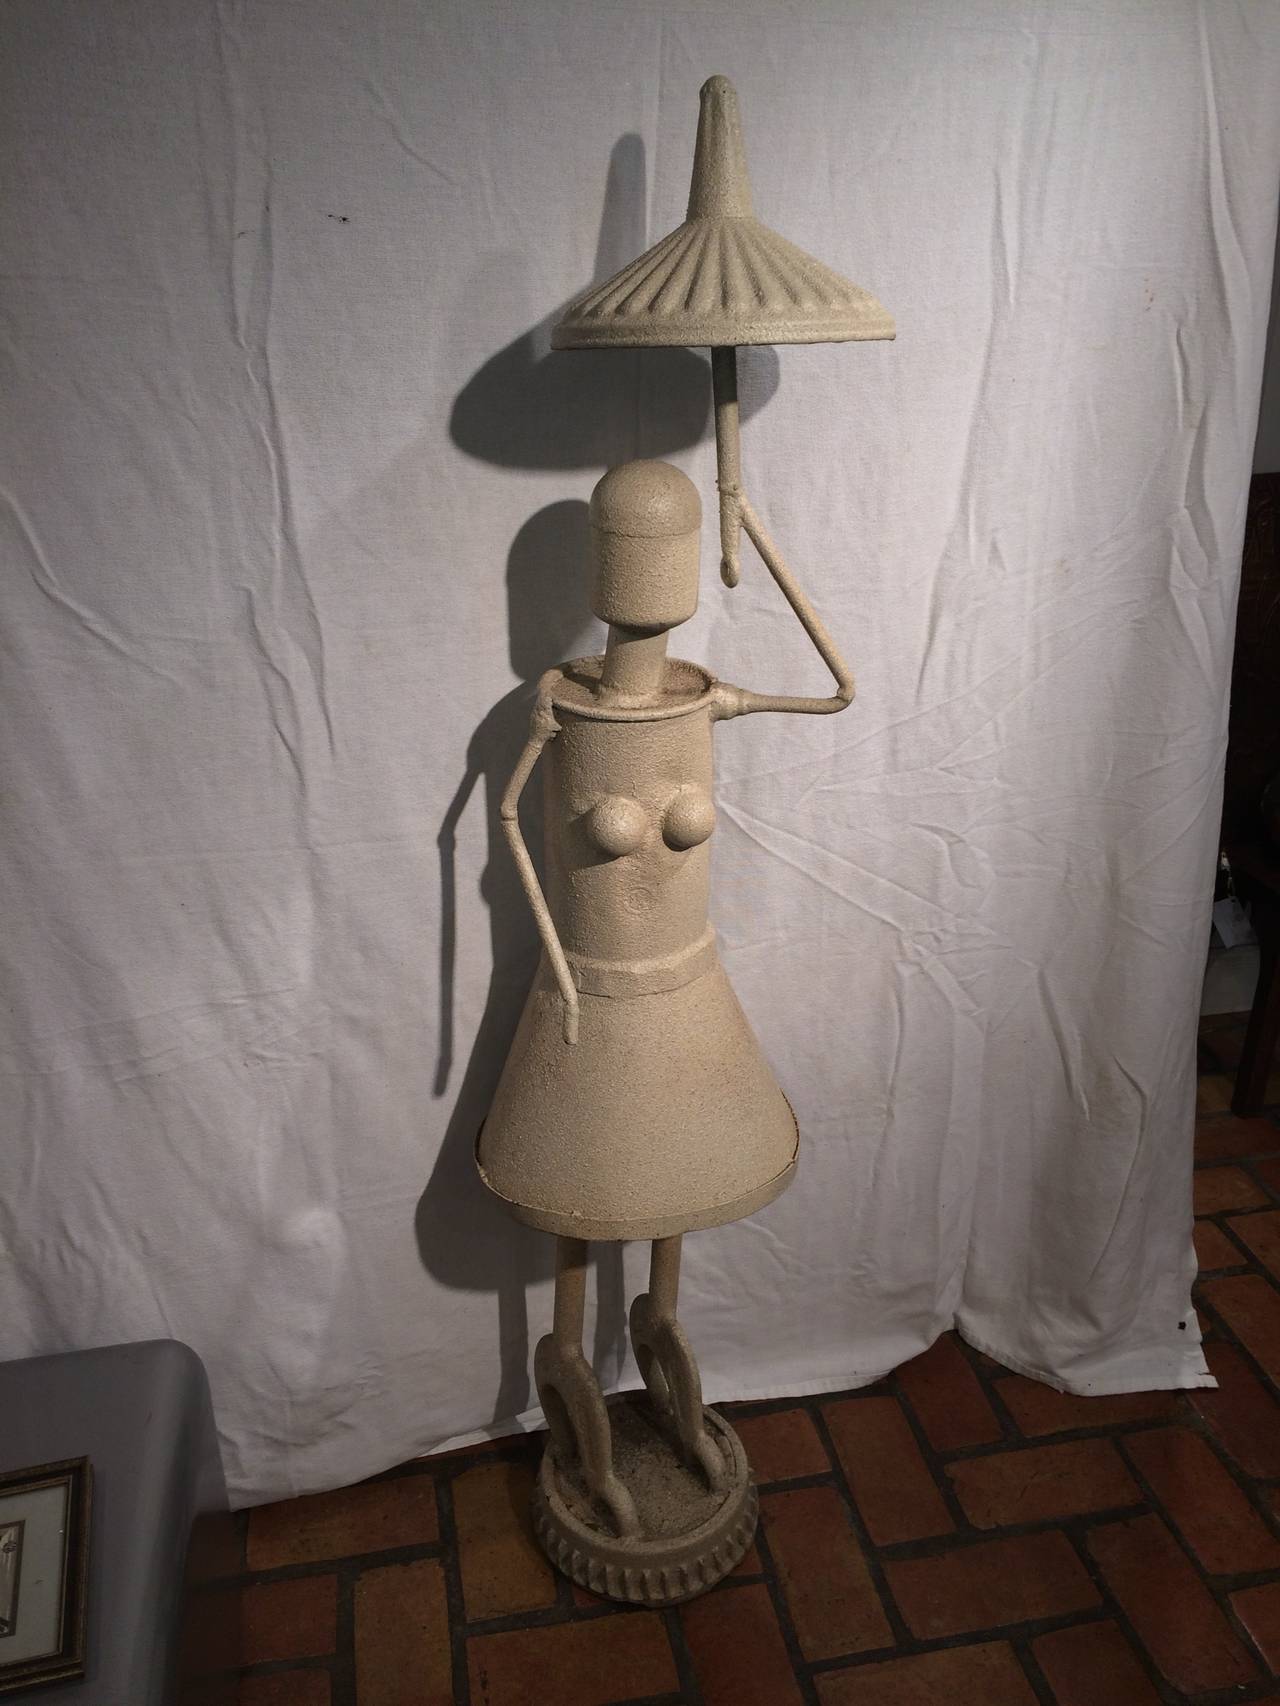 Lifesize  Skulptur einer Frau des Künstlers Jon Westberg. Diese beeindruckende Industrieskulptur einer Frau mit Regenschirm trägt den Titel 